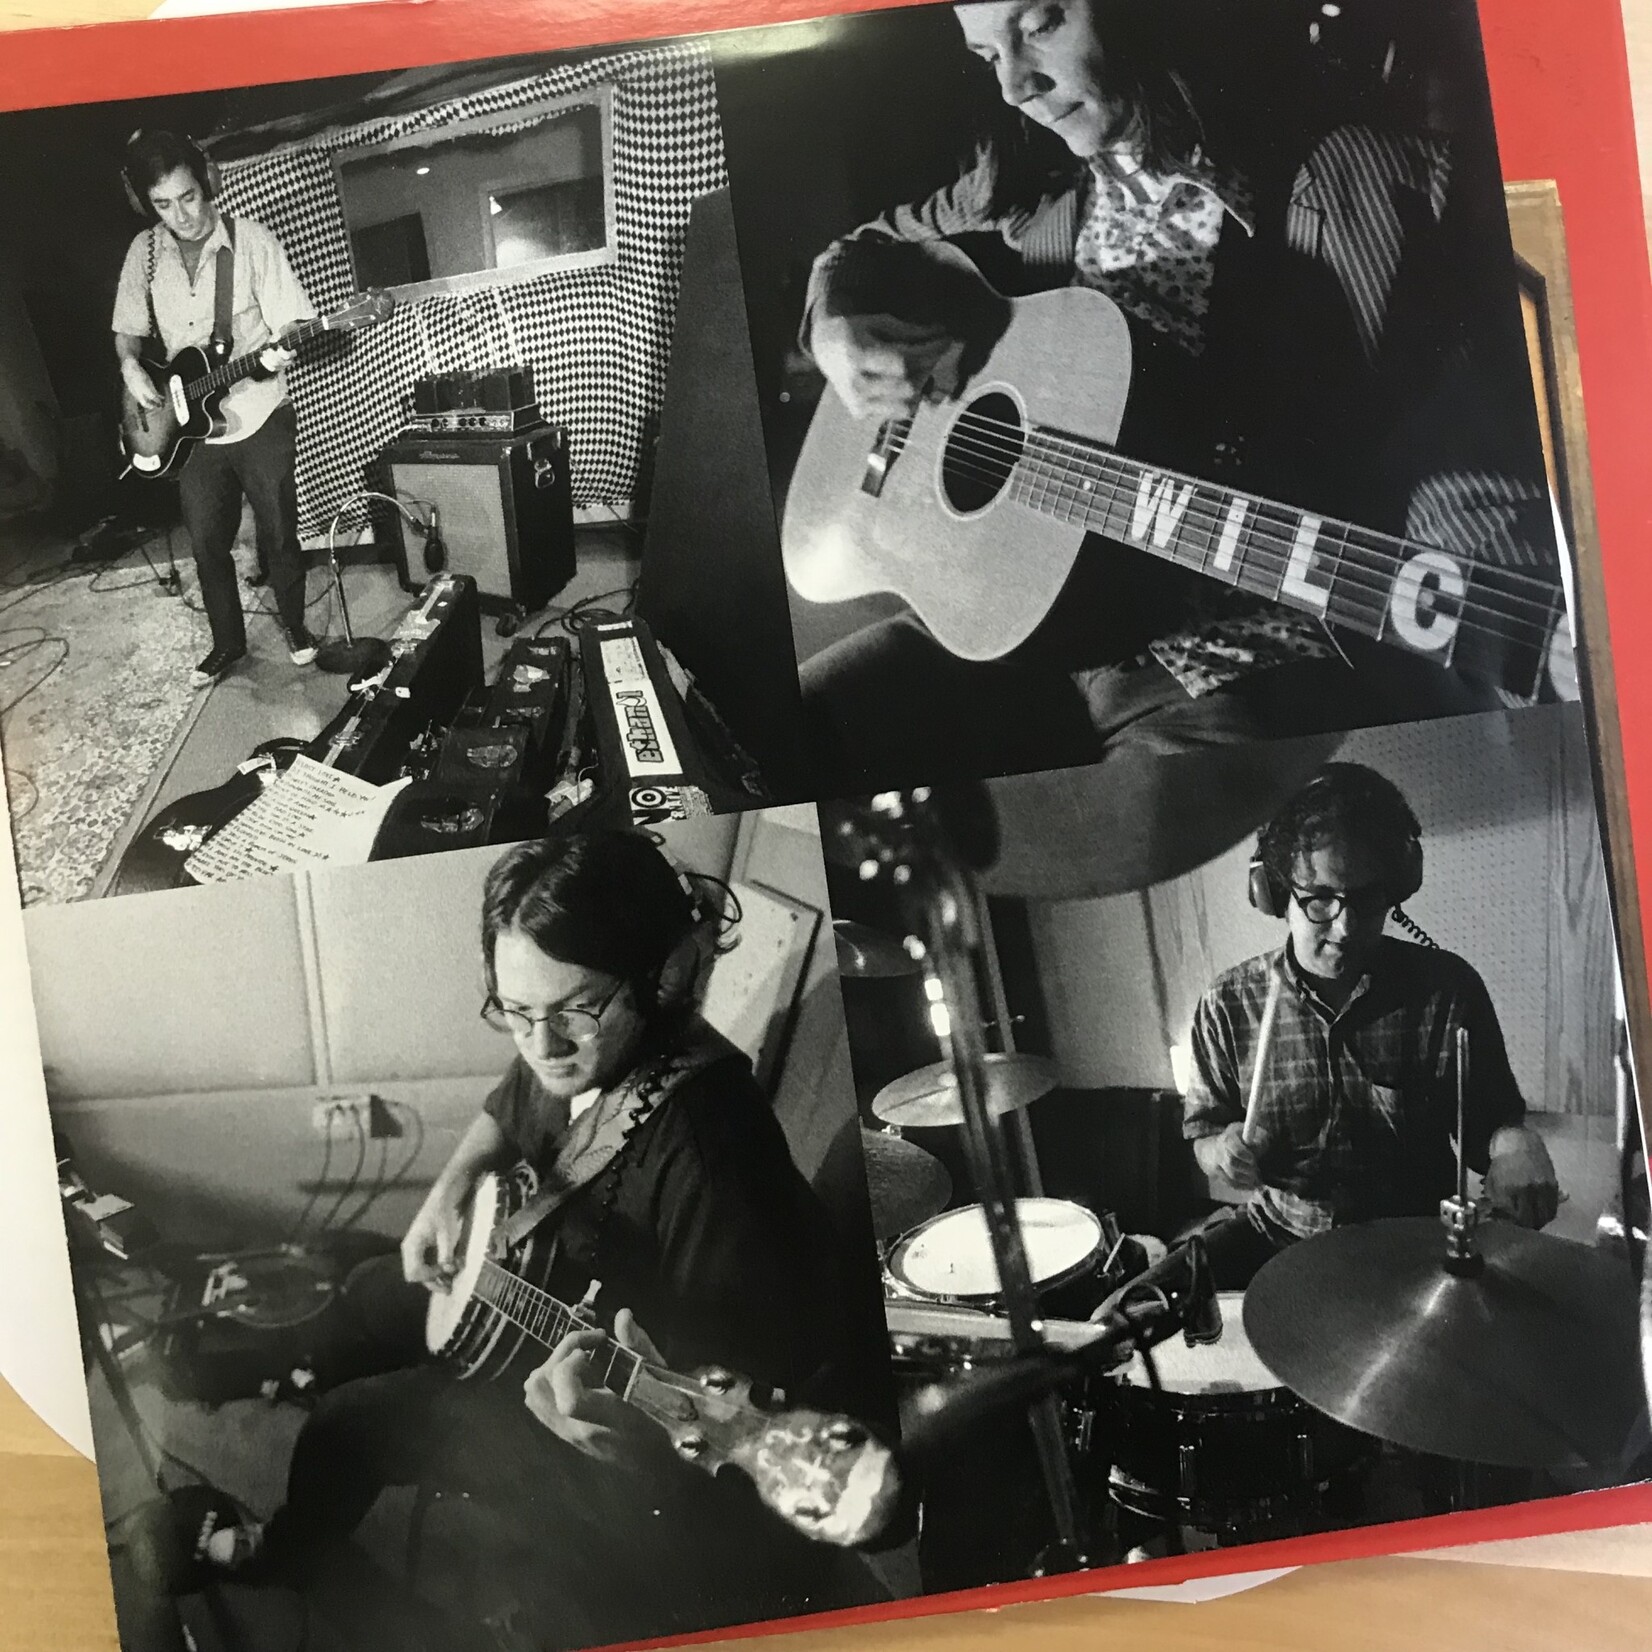 Wilco - A.M. (Orange/Red) - 518084 1 - Vinyl LP (USED)